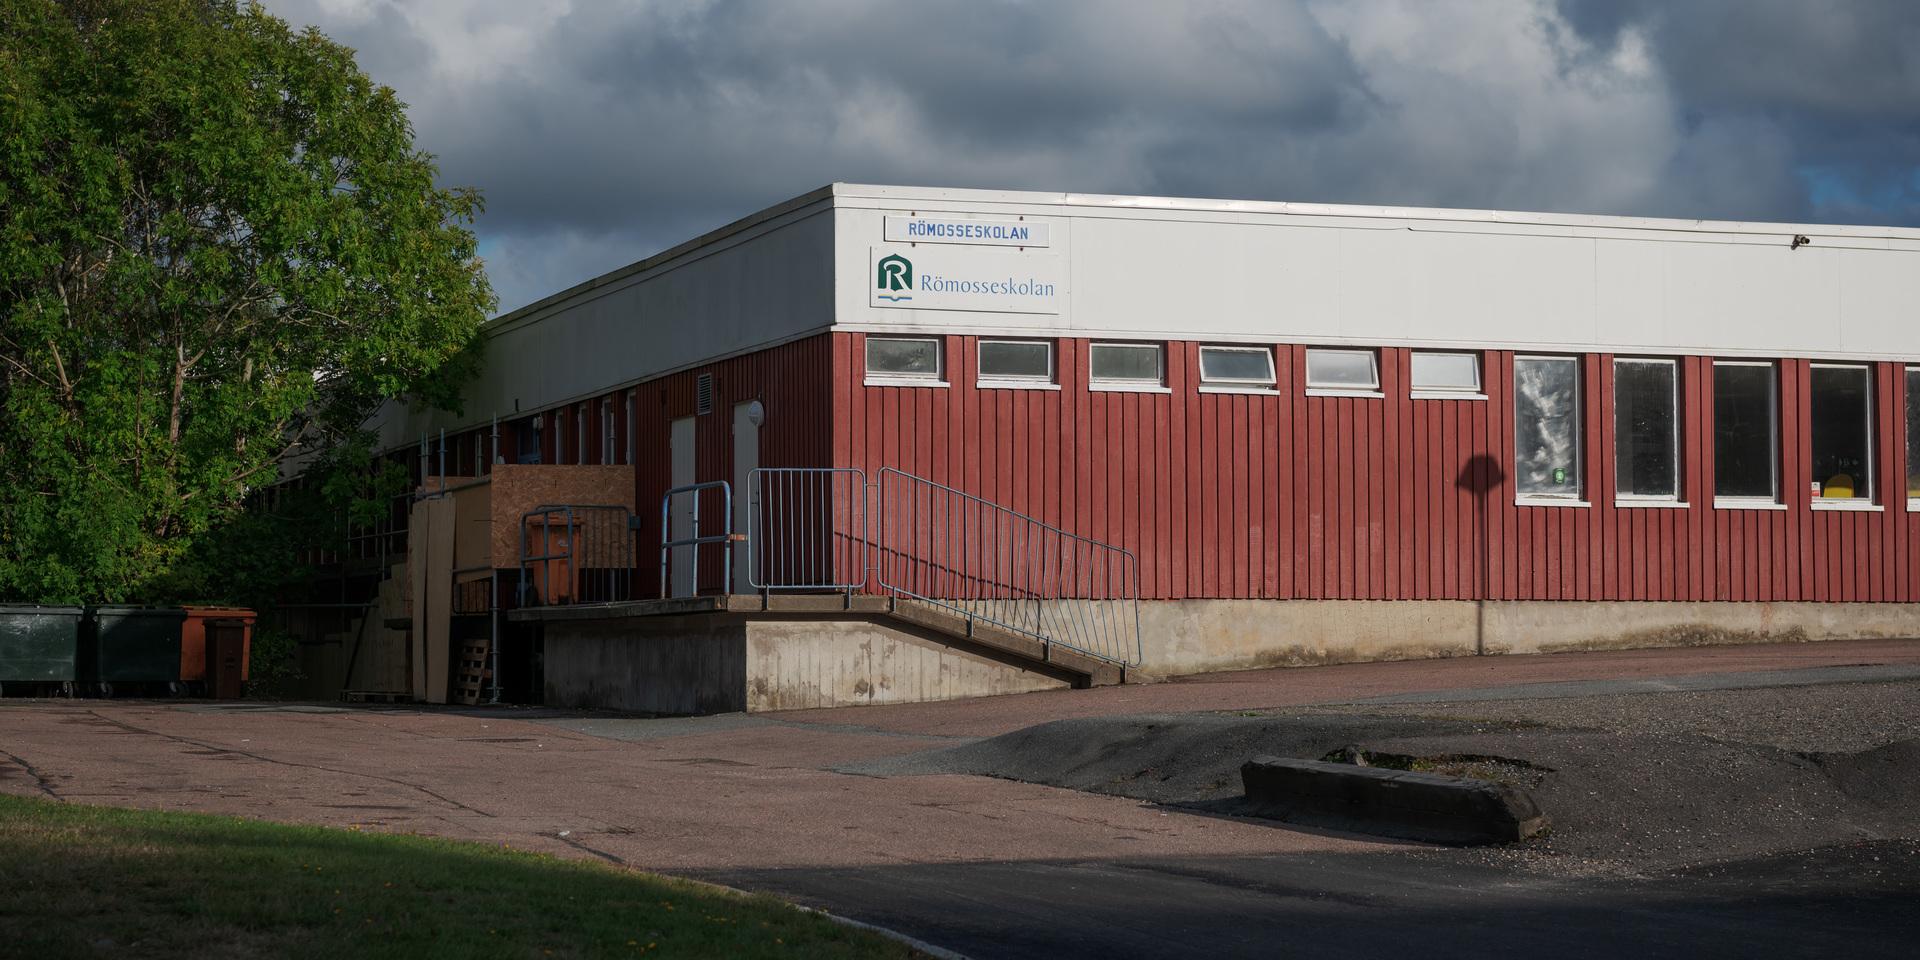 Römosseskolan i Göteborg står i centrum för en friskoleskandal. 